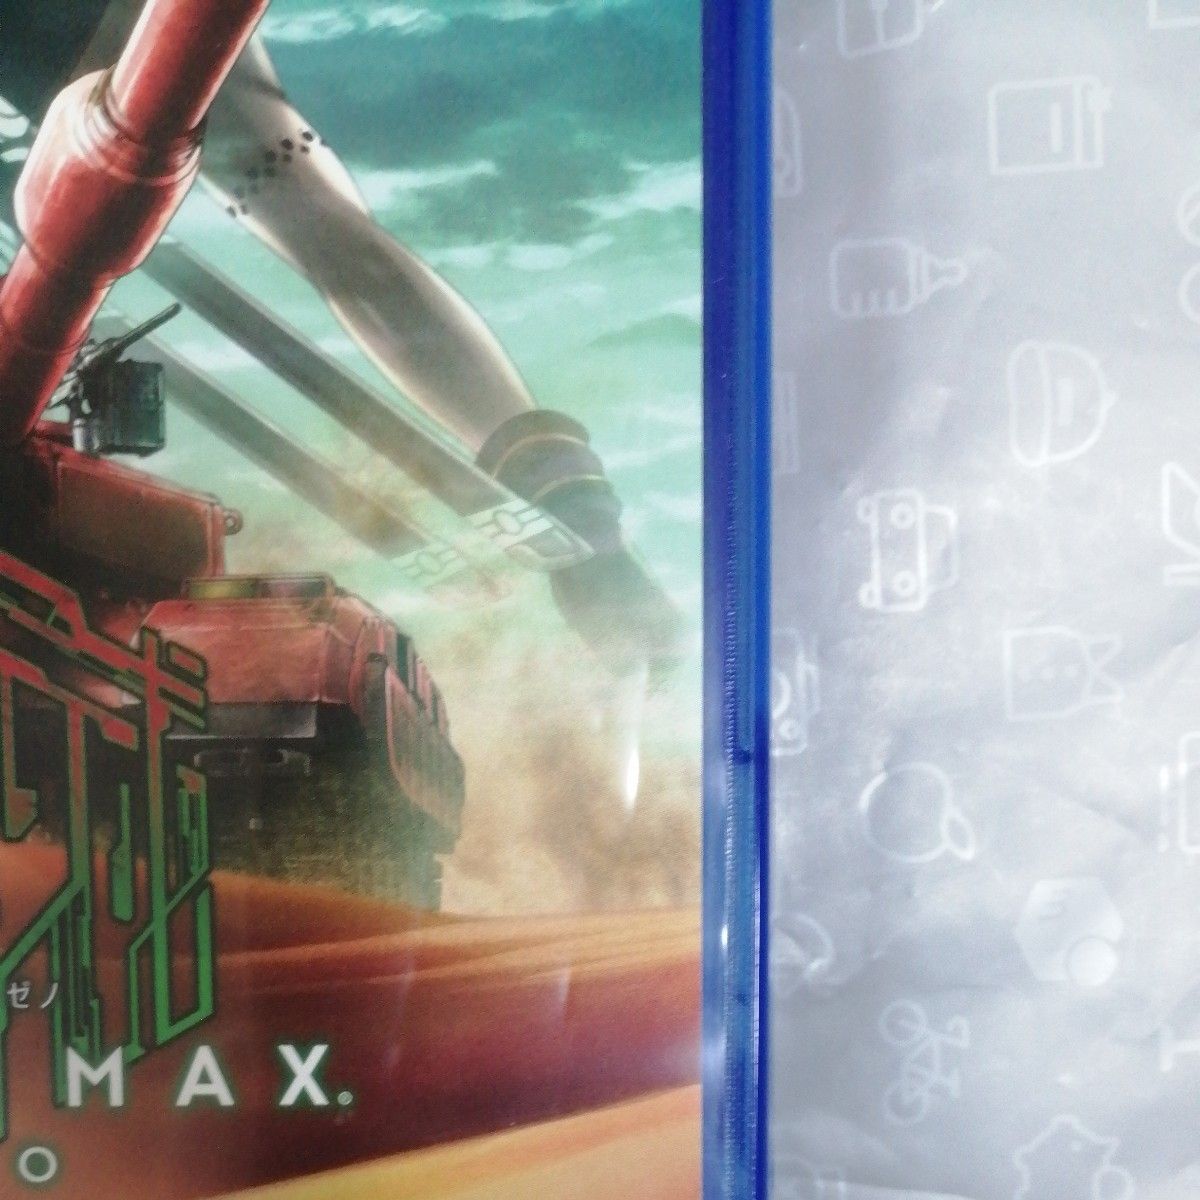 【PS4】 メタルマックスゼノ METAL MAX Xeno